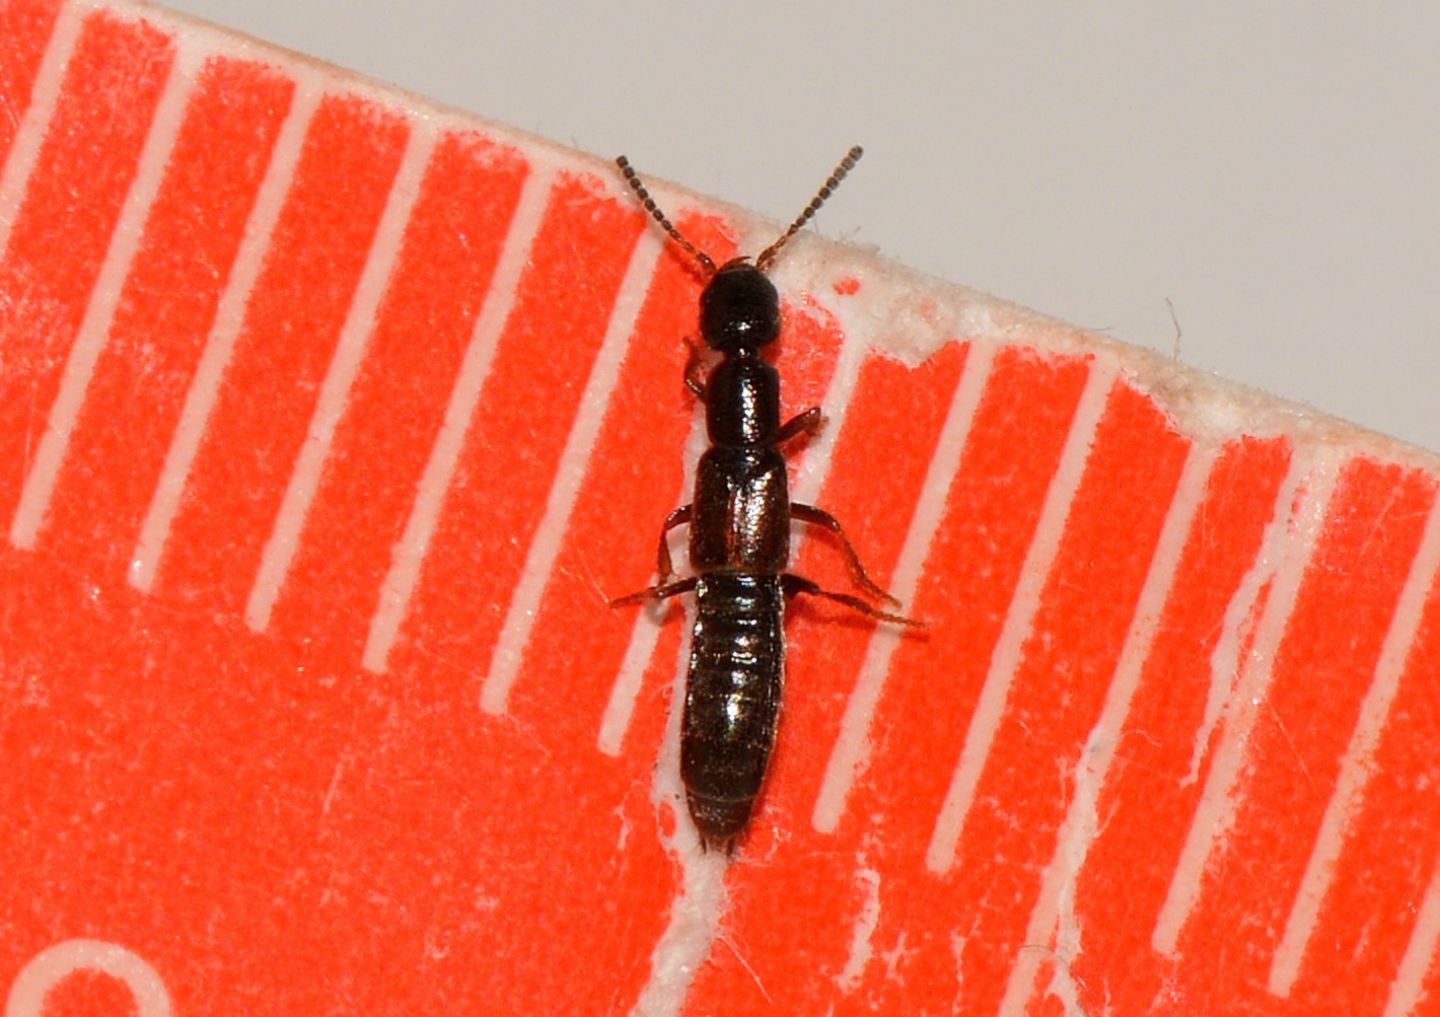 Staphylinidae Staphilininae Xantholinini